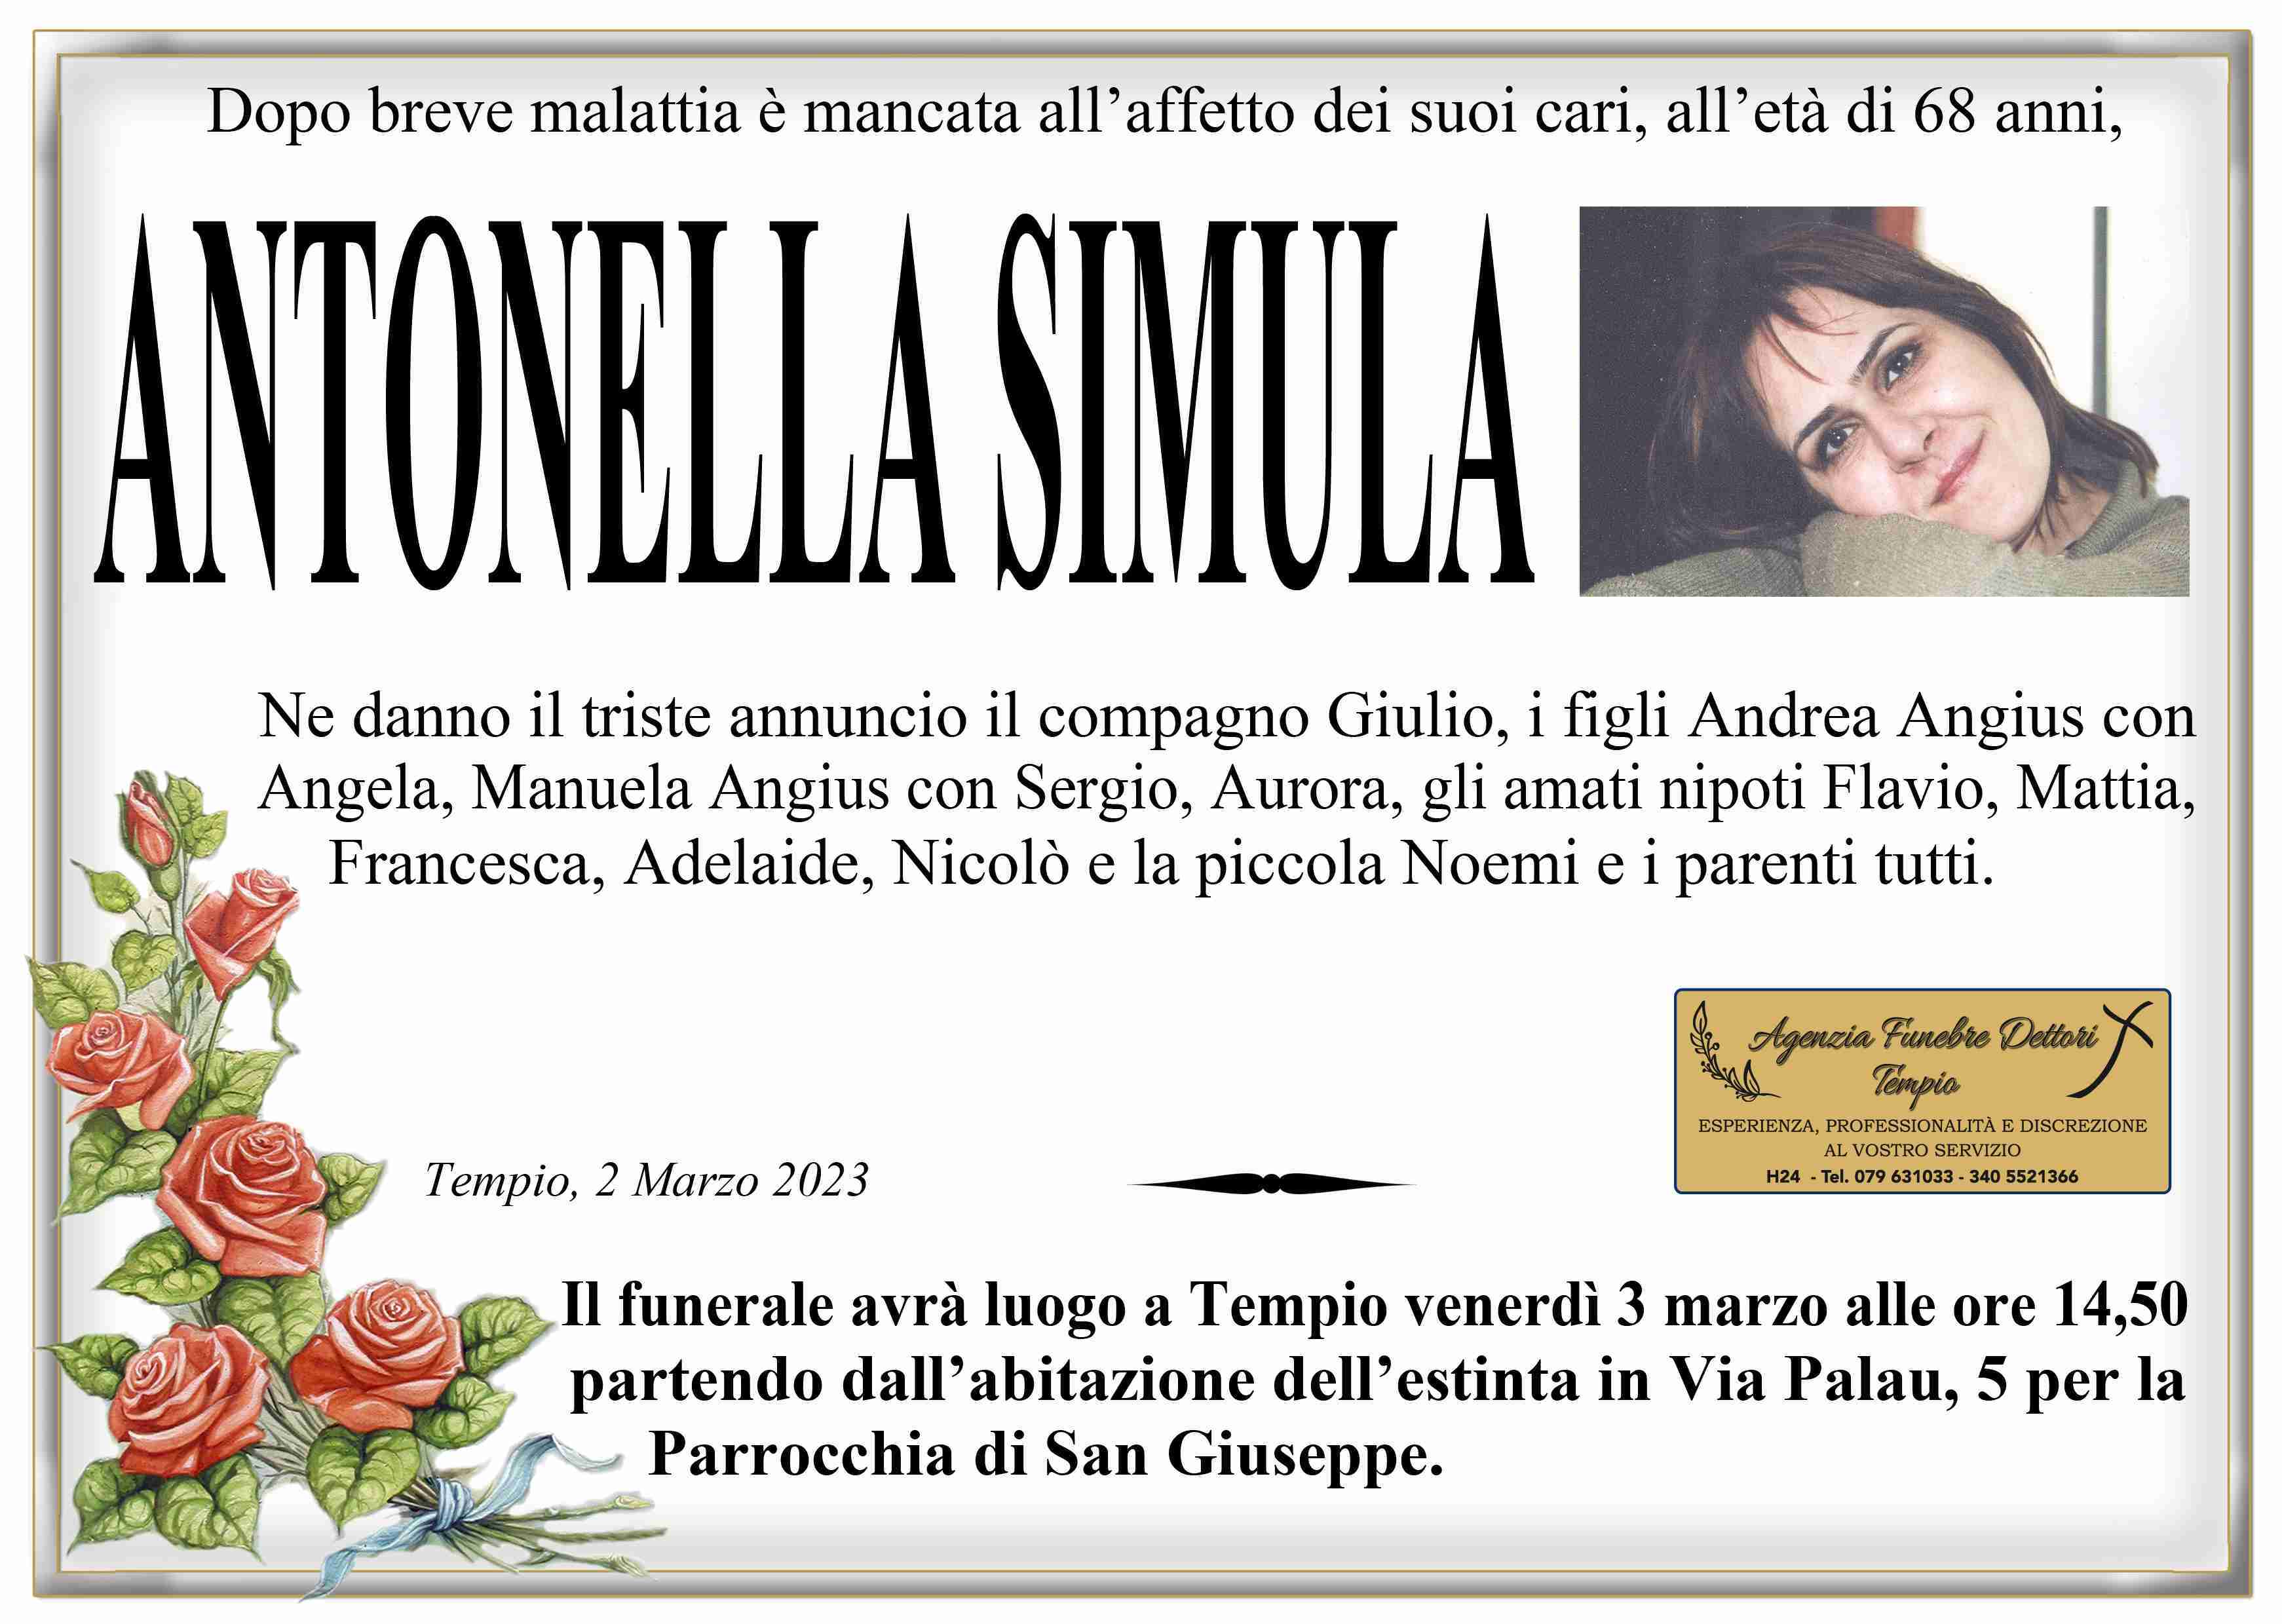 Antonella Simula